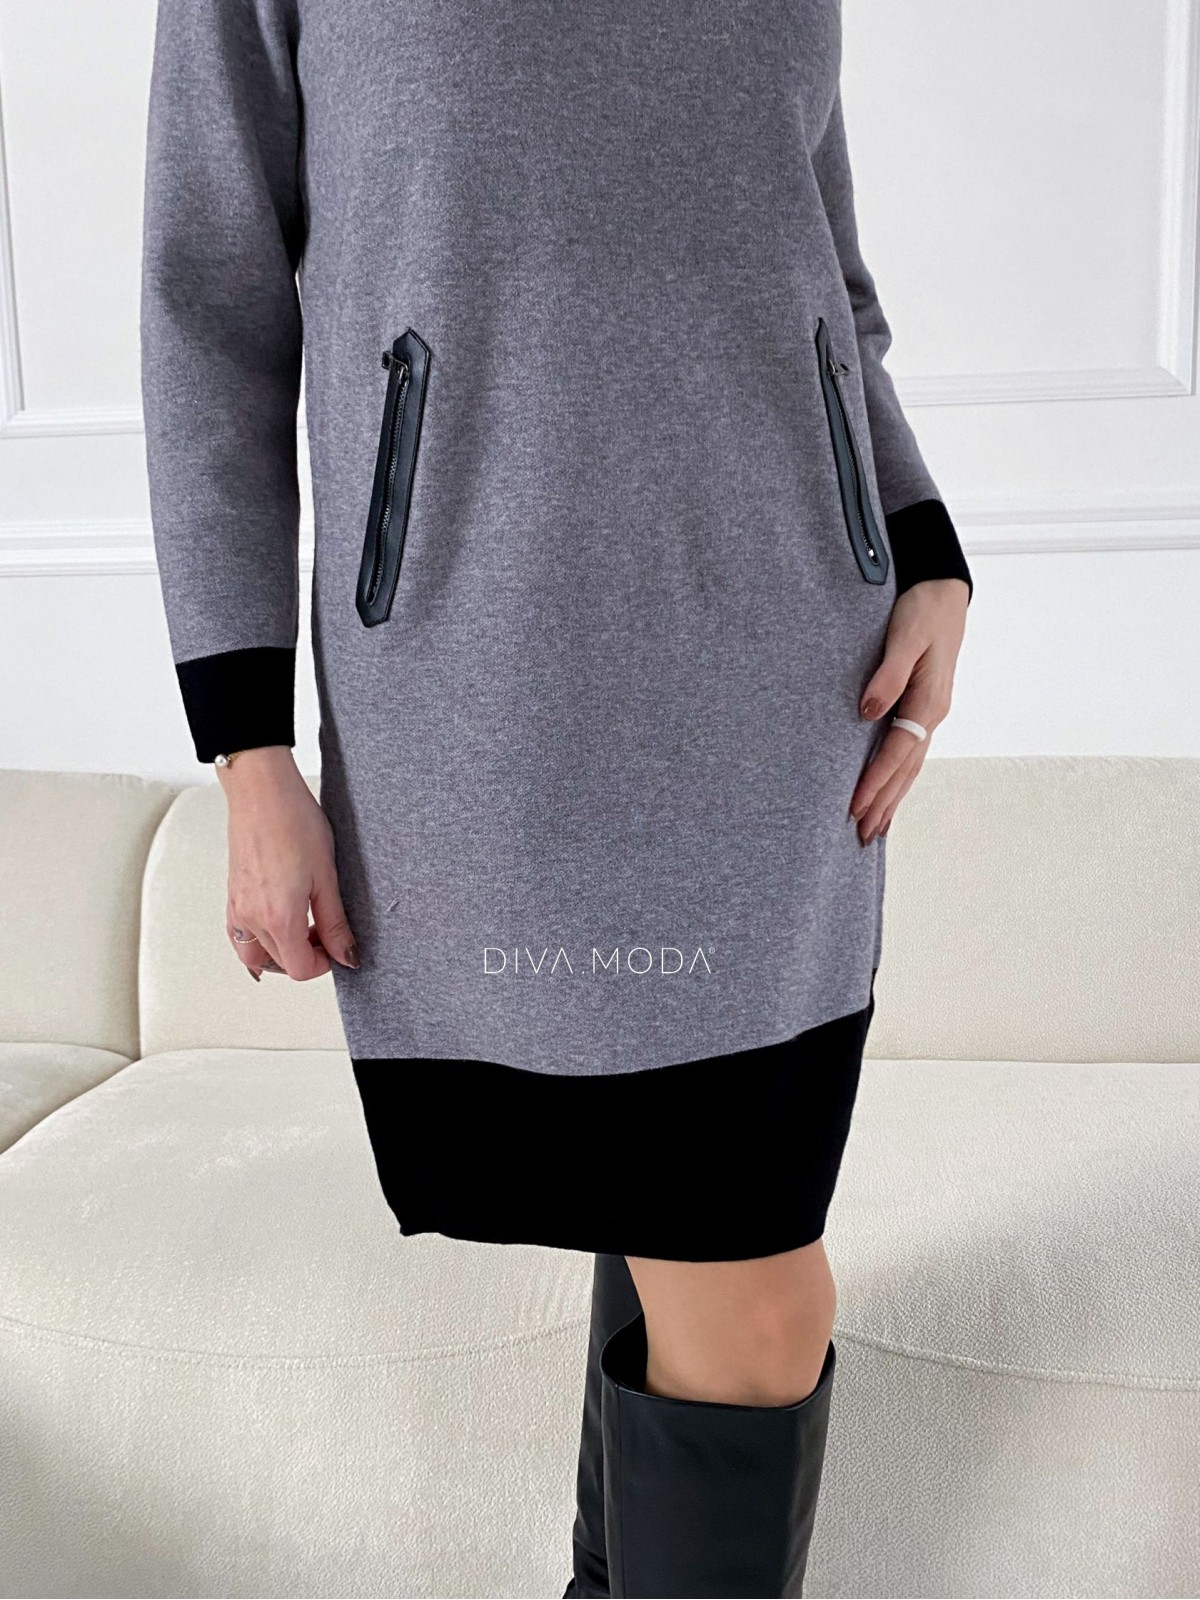 Úpletové šaty s koženkovou aplikací šedo/ černá P 49